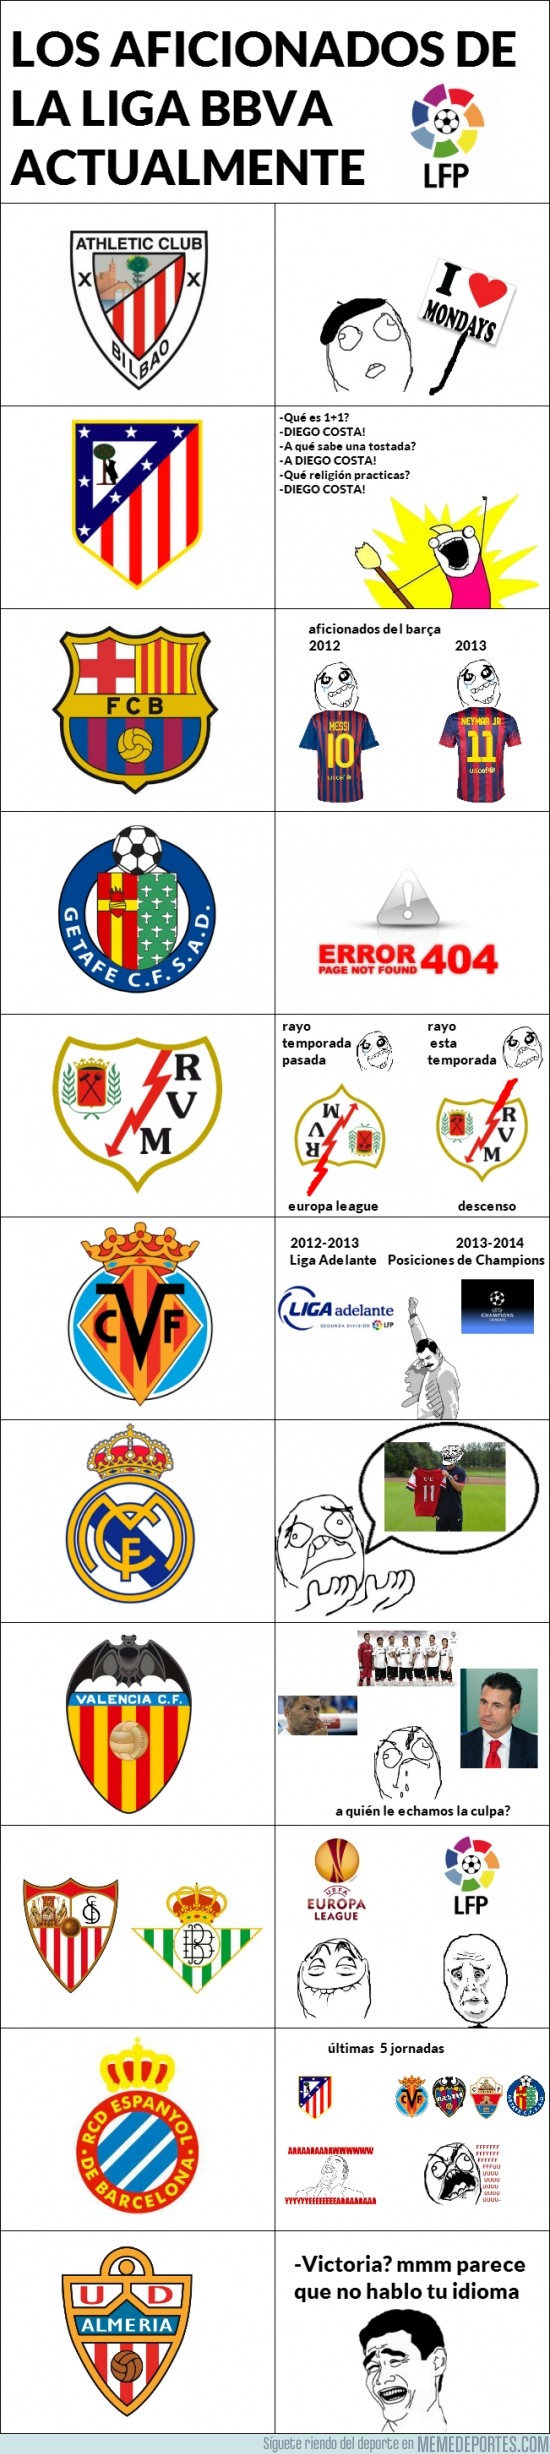 201451 - Los aficionados de la Liga BBVA actualmente